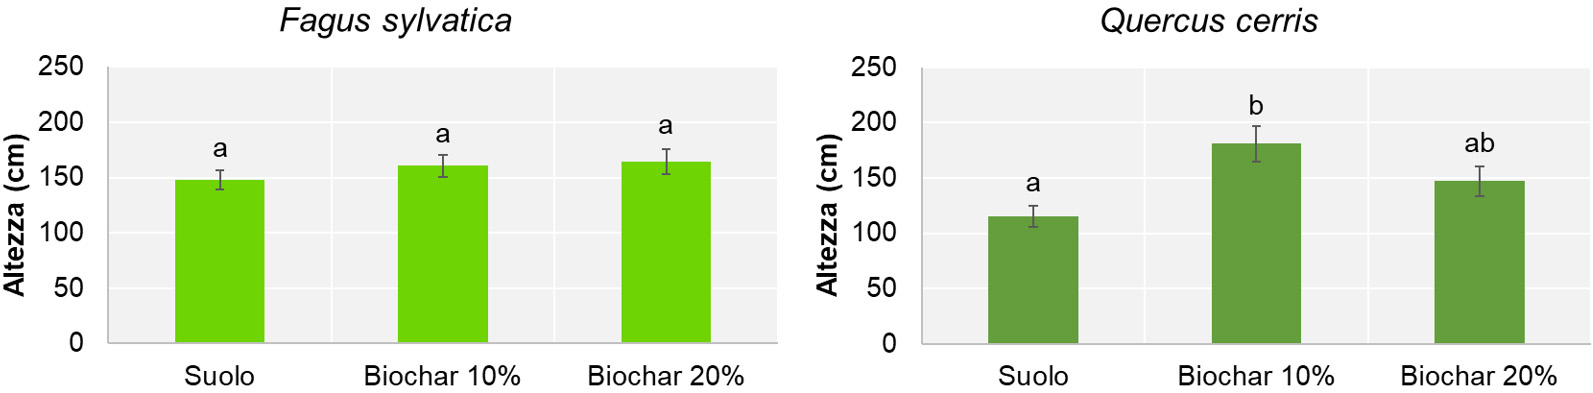 Effetti biochar sulla crescita arborea 2grafici 3